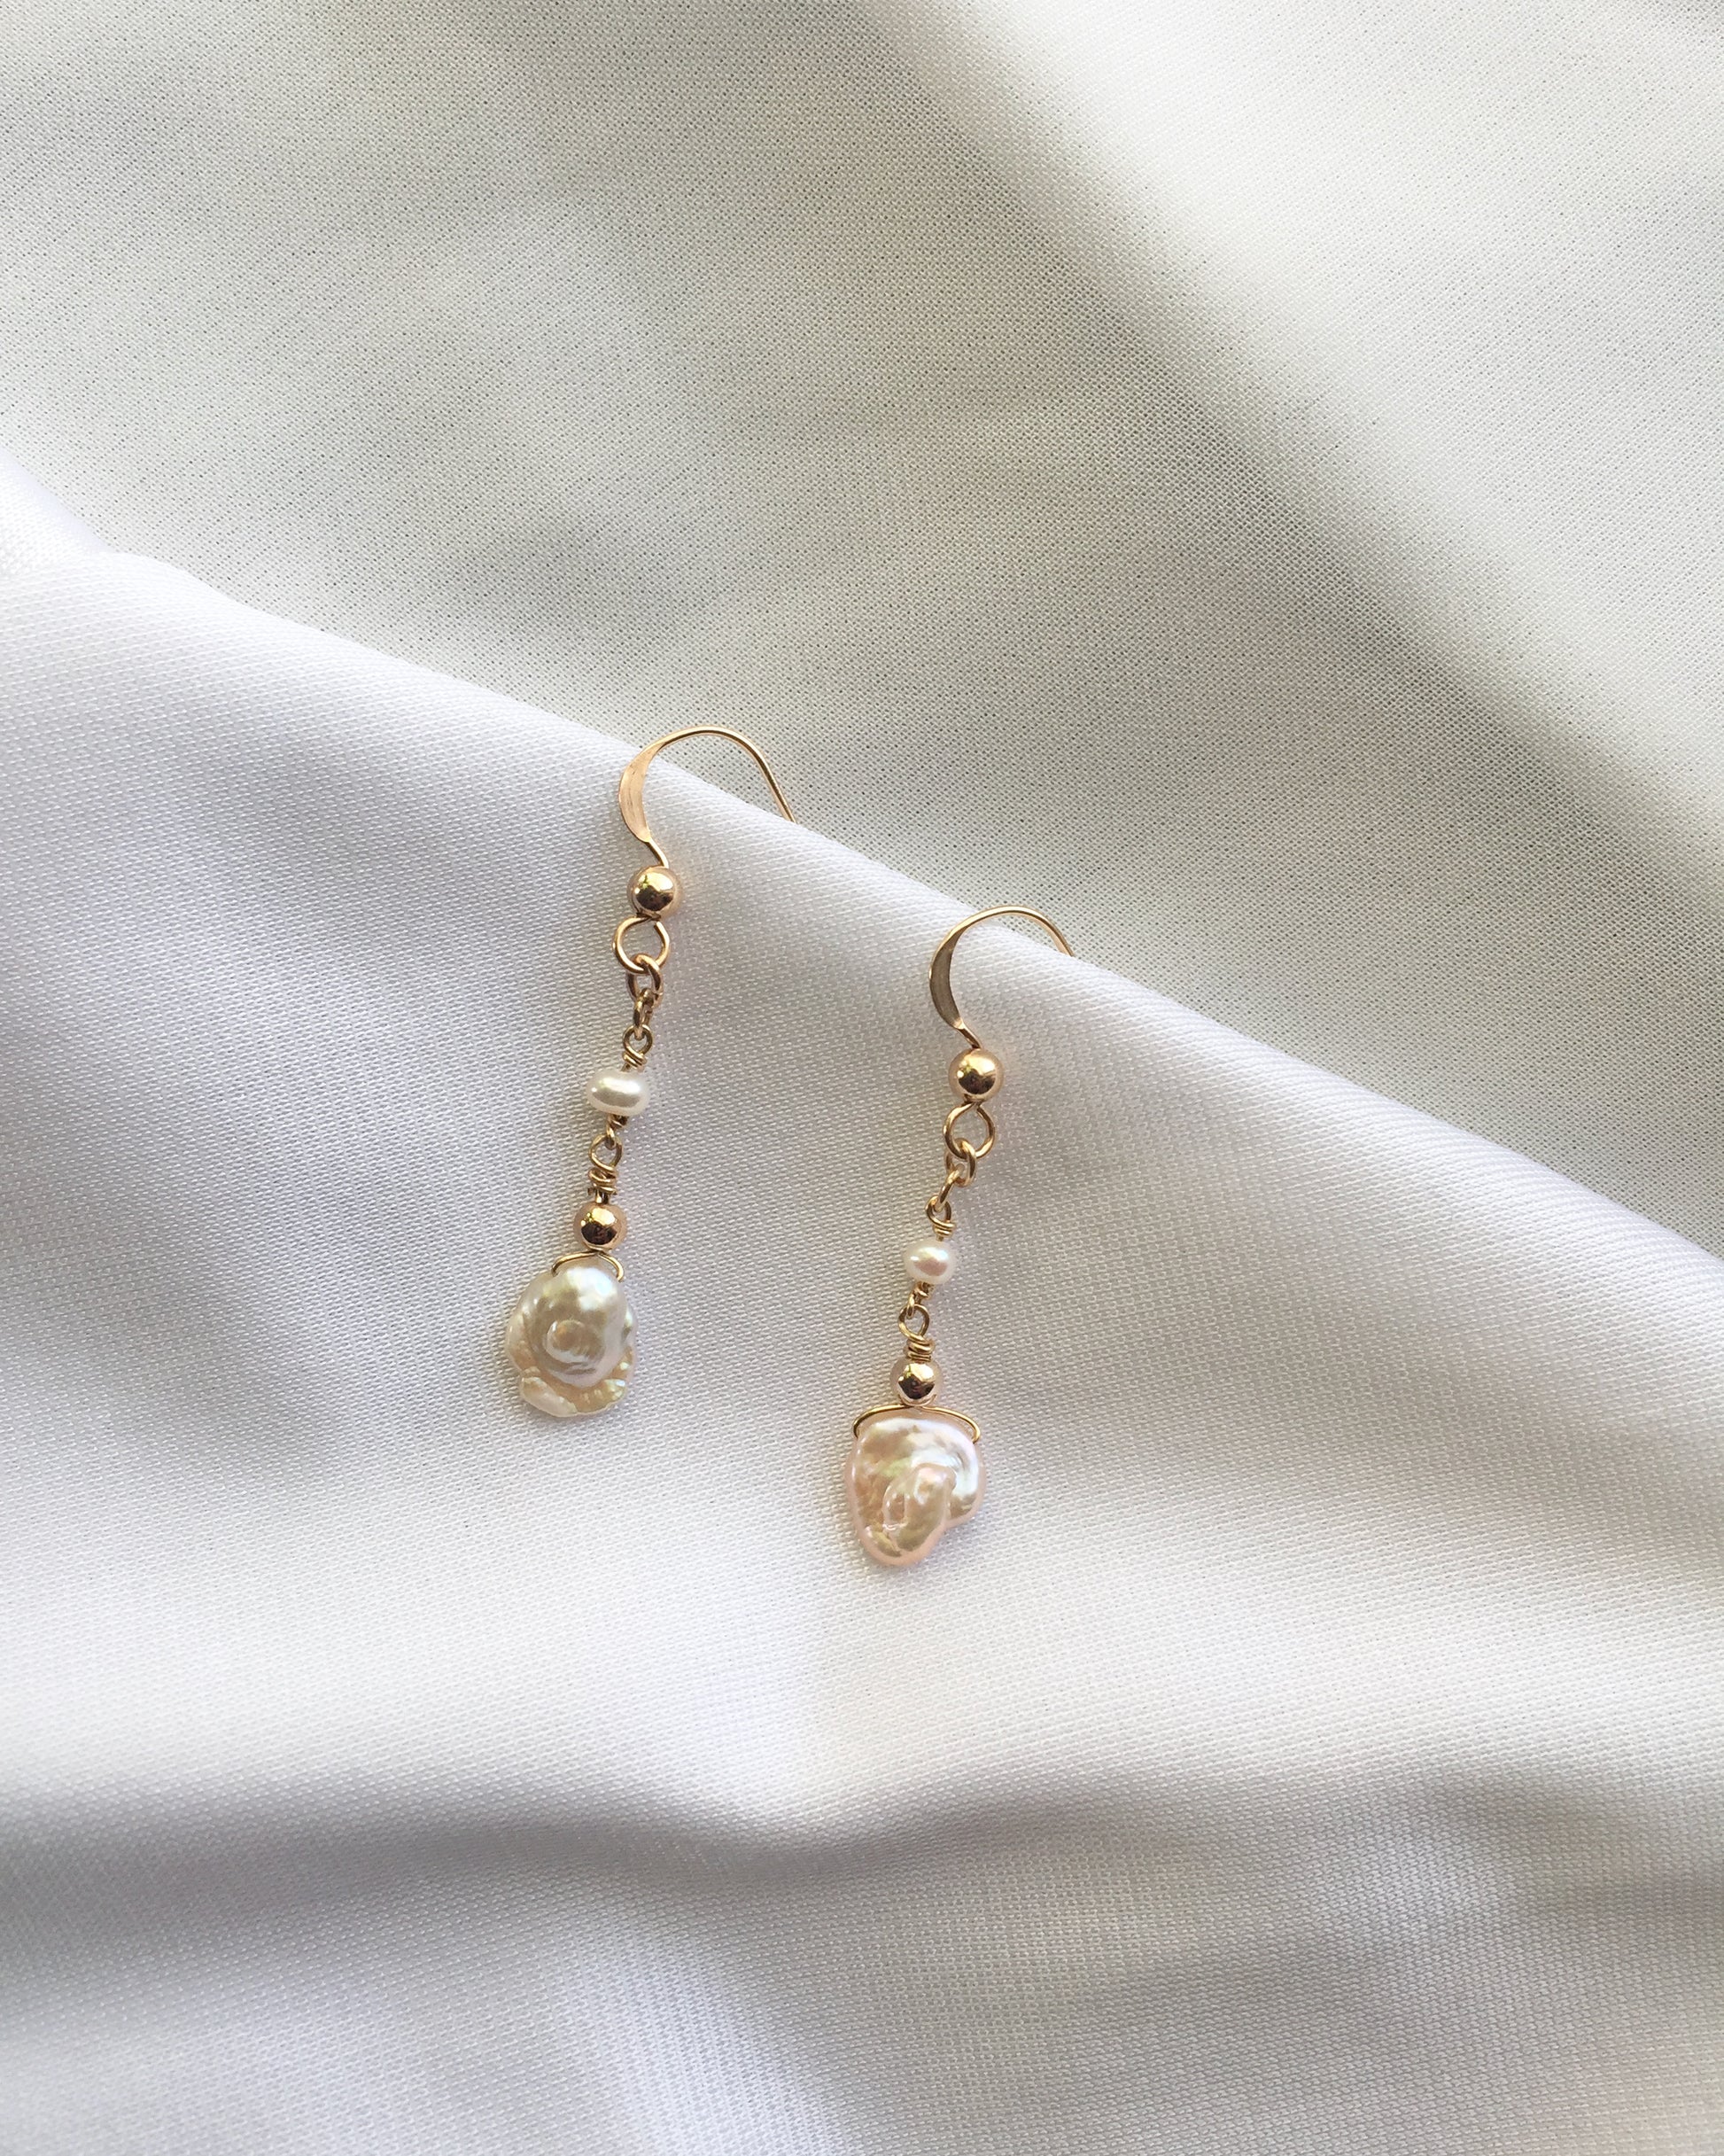 Dainty Pearl Earrings | Delicate Pearl Earrings | Organic Pearl Dangle Earrings in Gold Filled or Sterling Silver | IB Jewelry